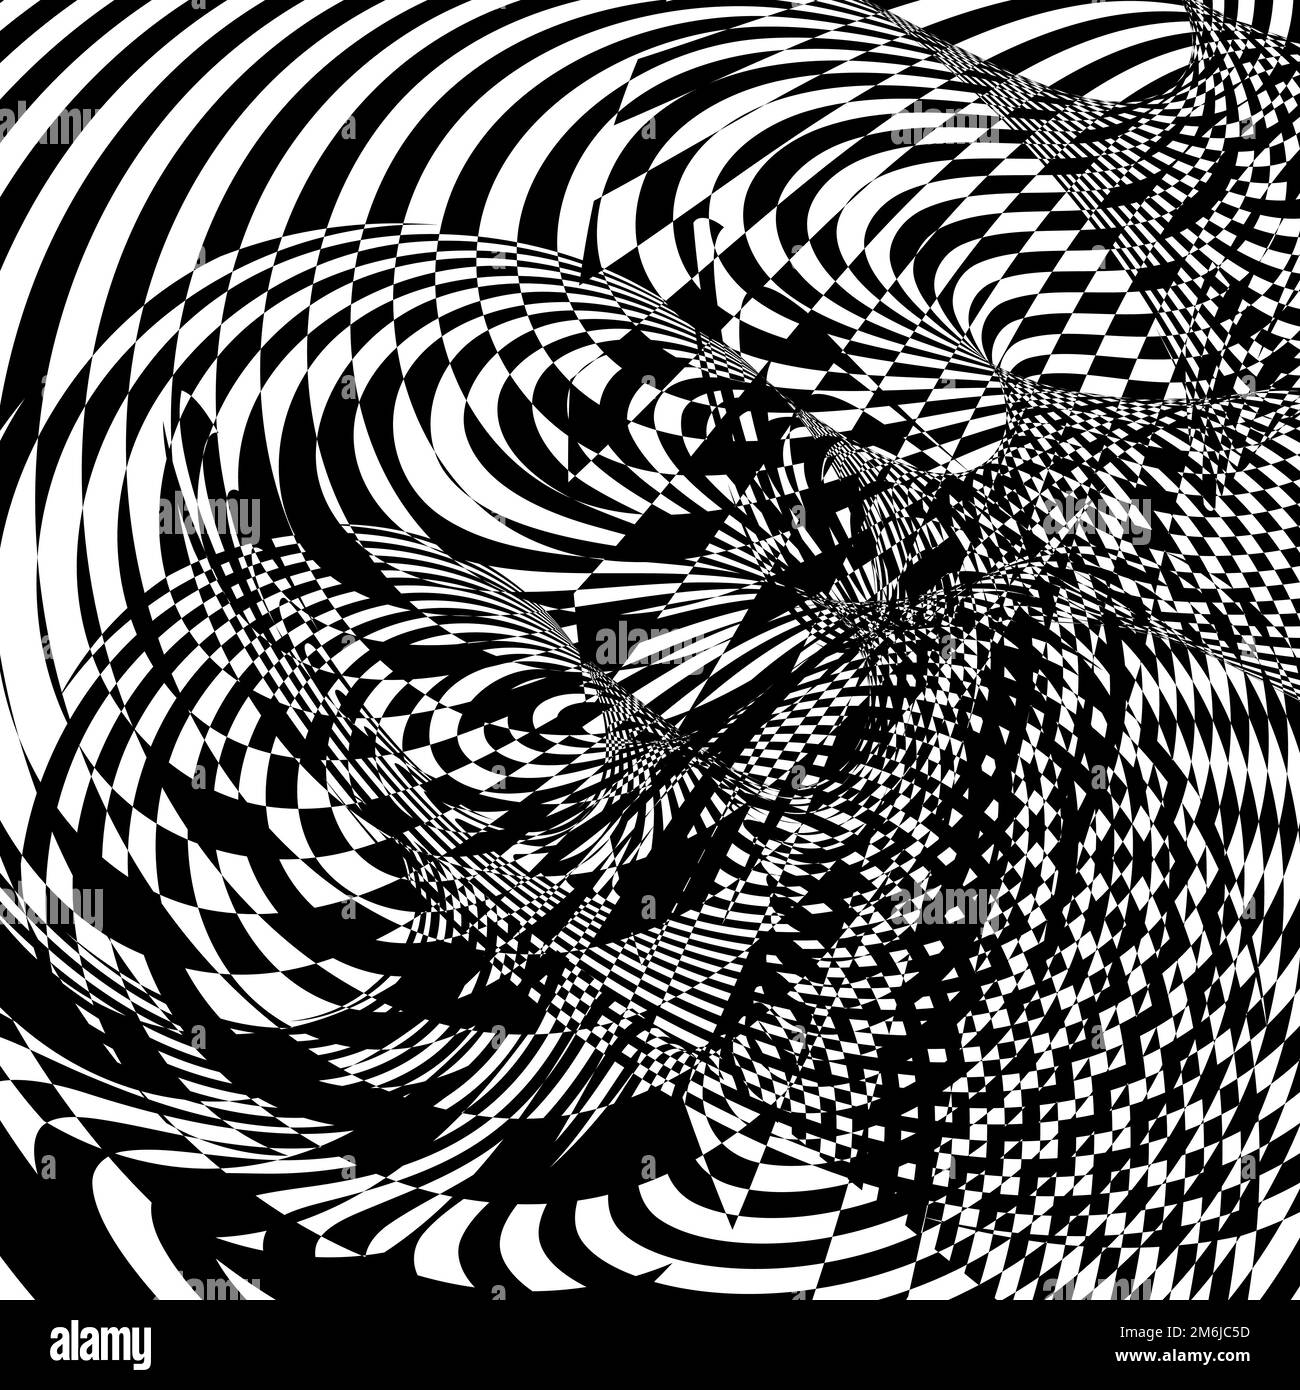 Op art astratto con distorsioni a scacchi. Contrasto in bianco e nero. Illustrazione psichedelica insolita Illustrazione Vettoriale